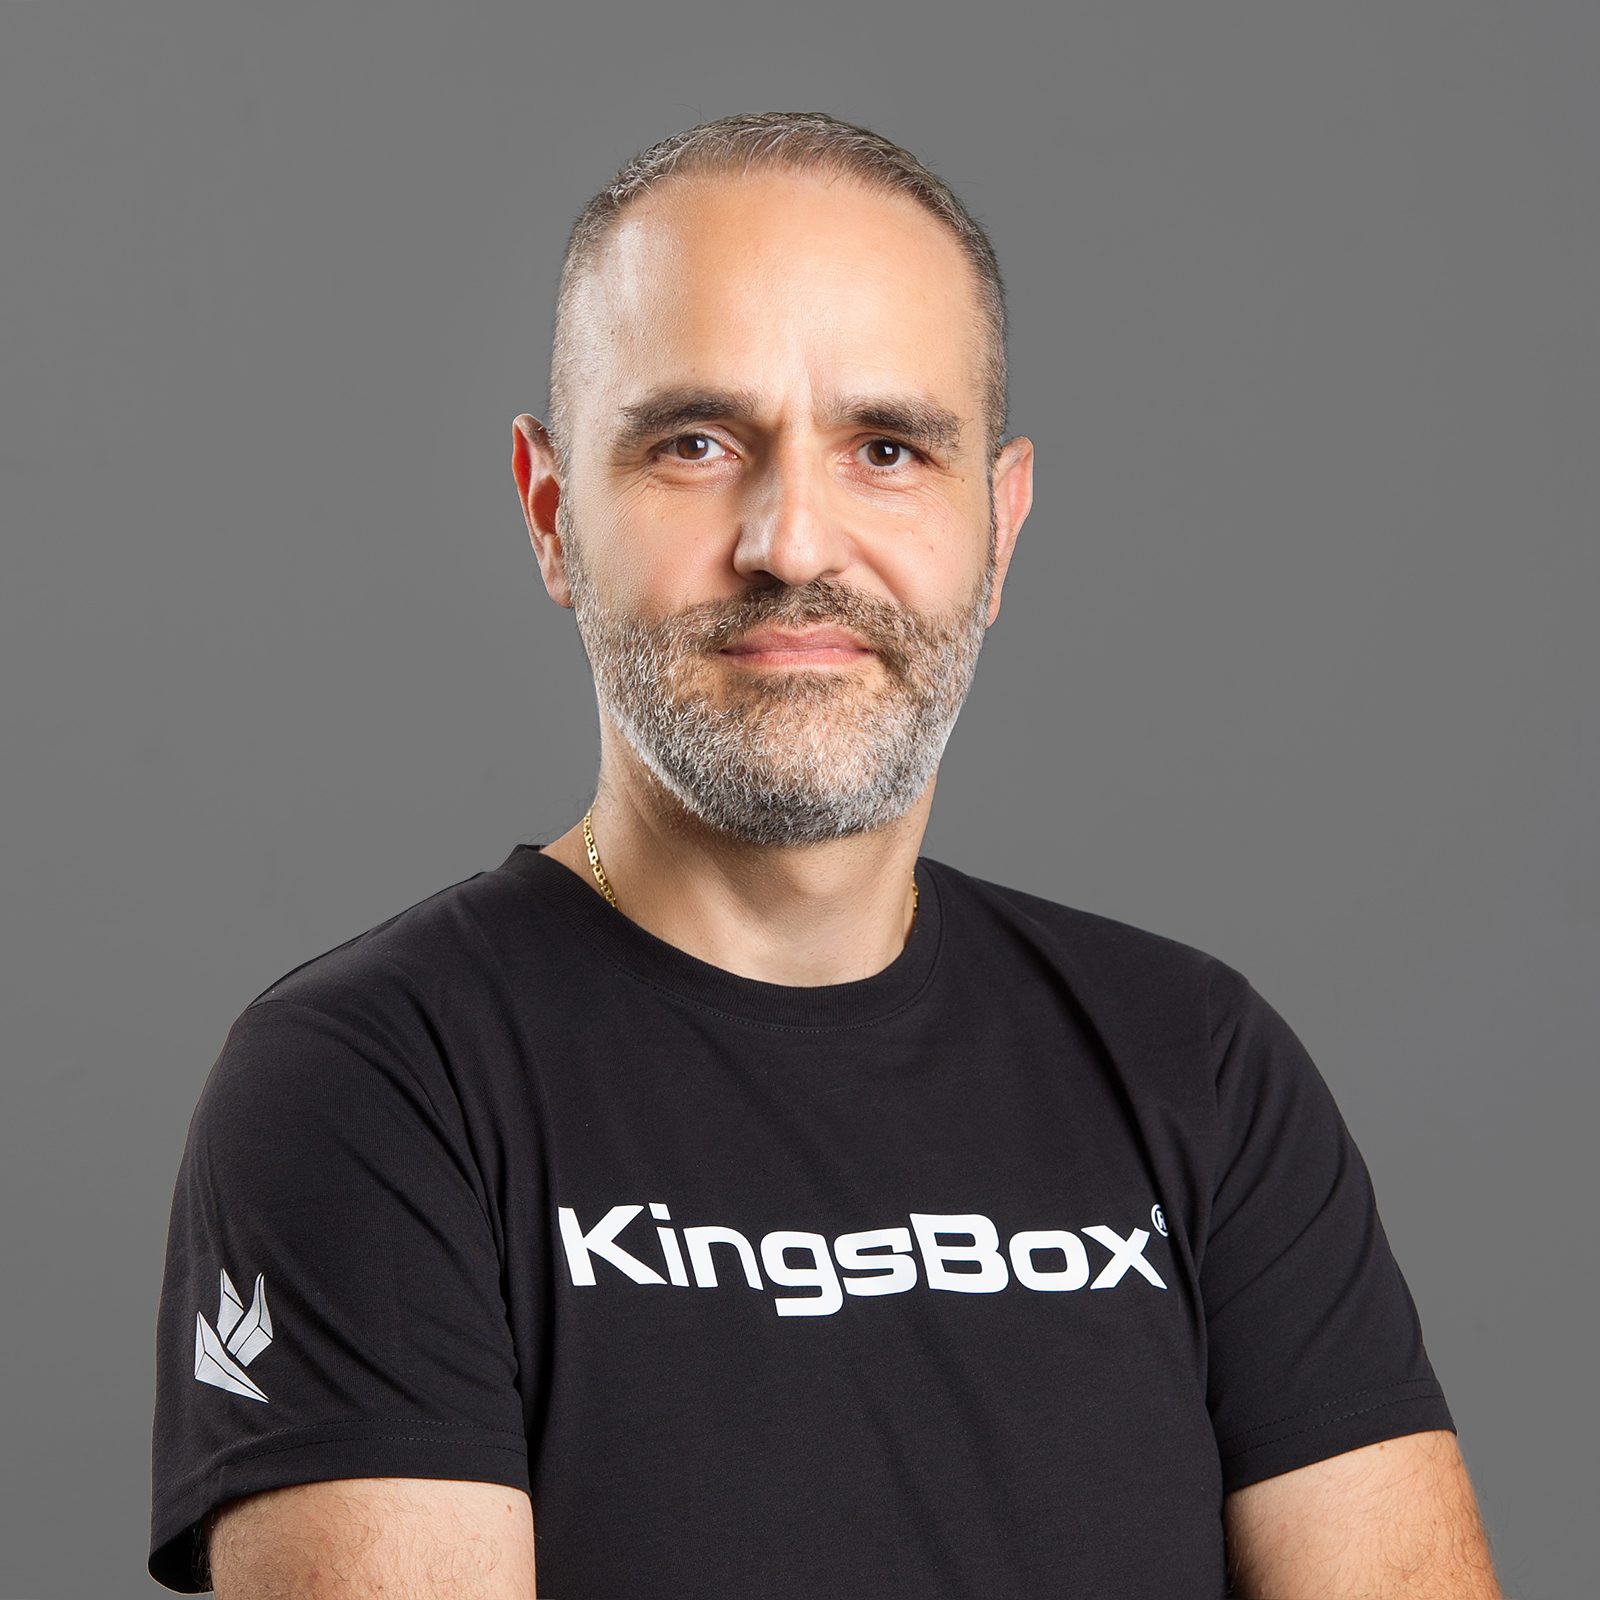 Kingsbox member Franco de Rienzo